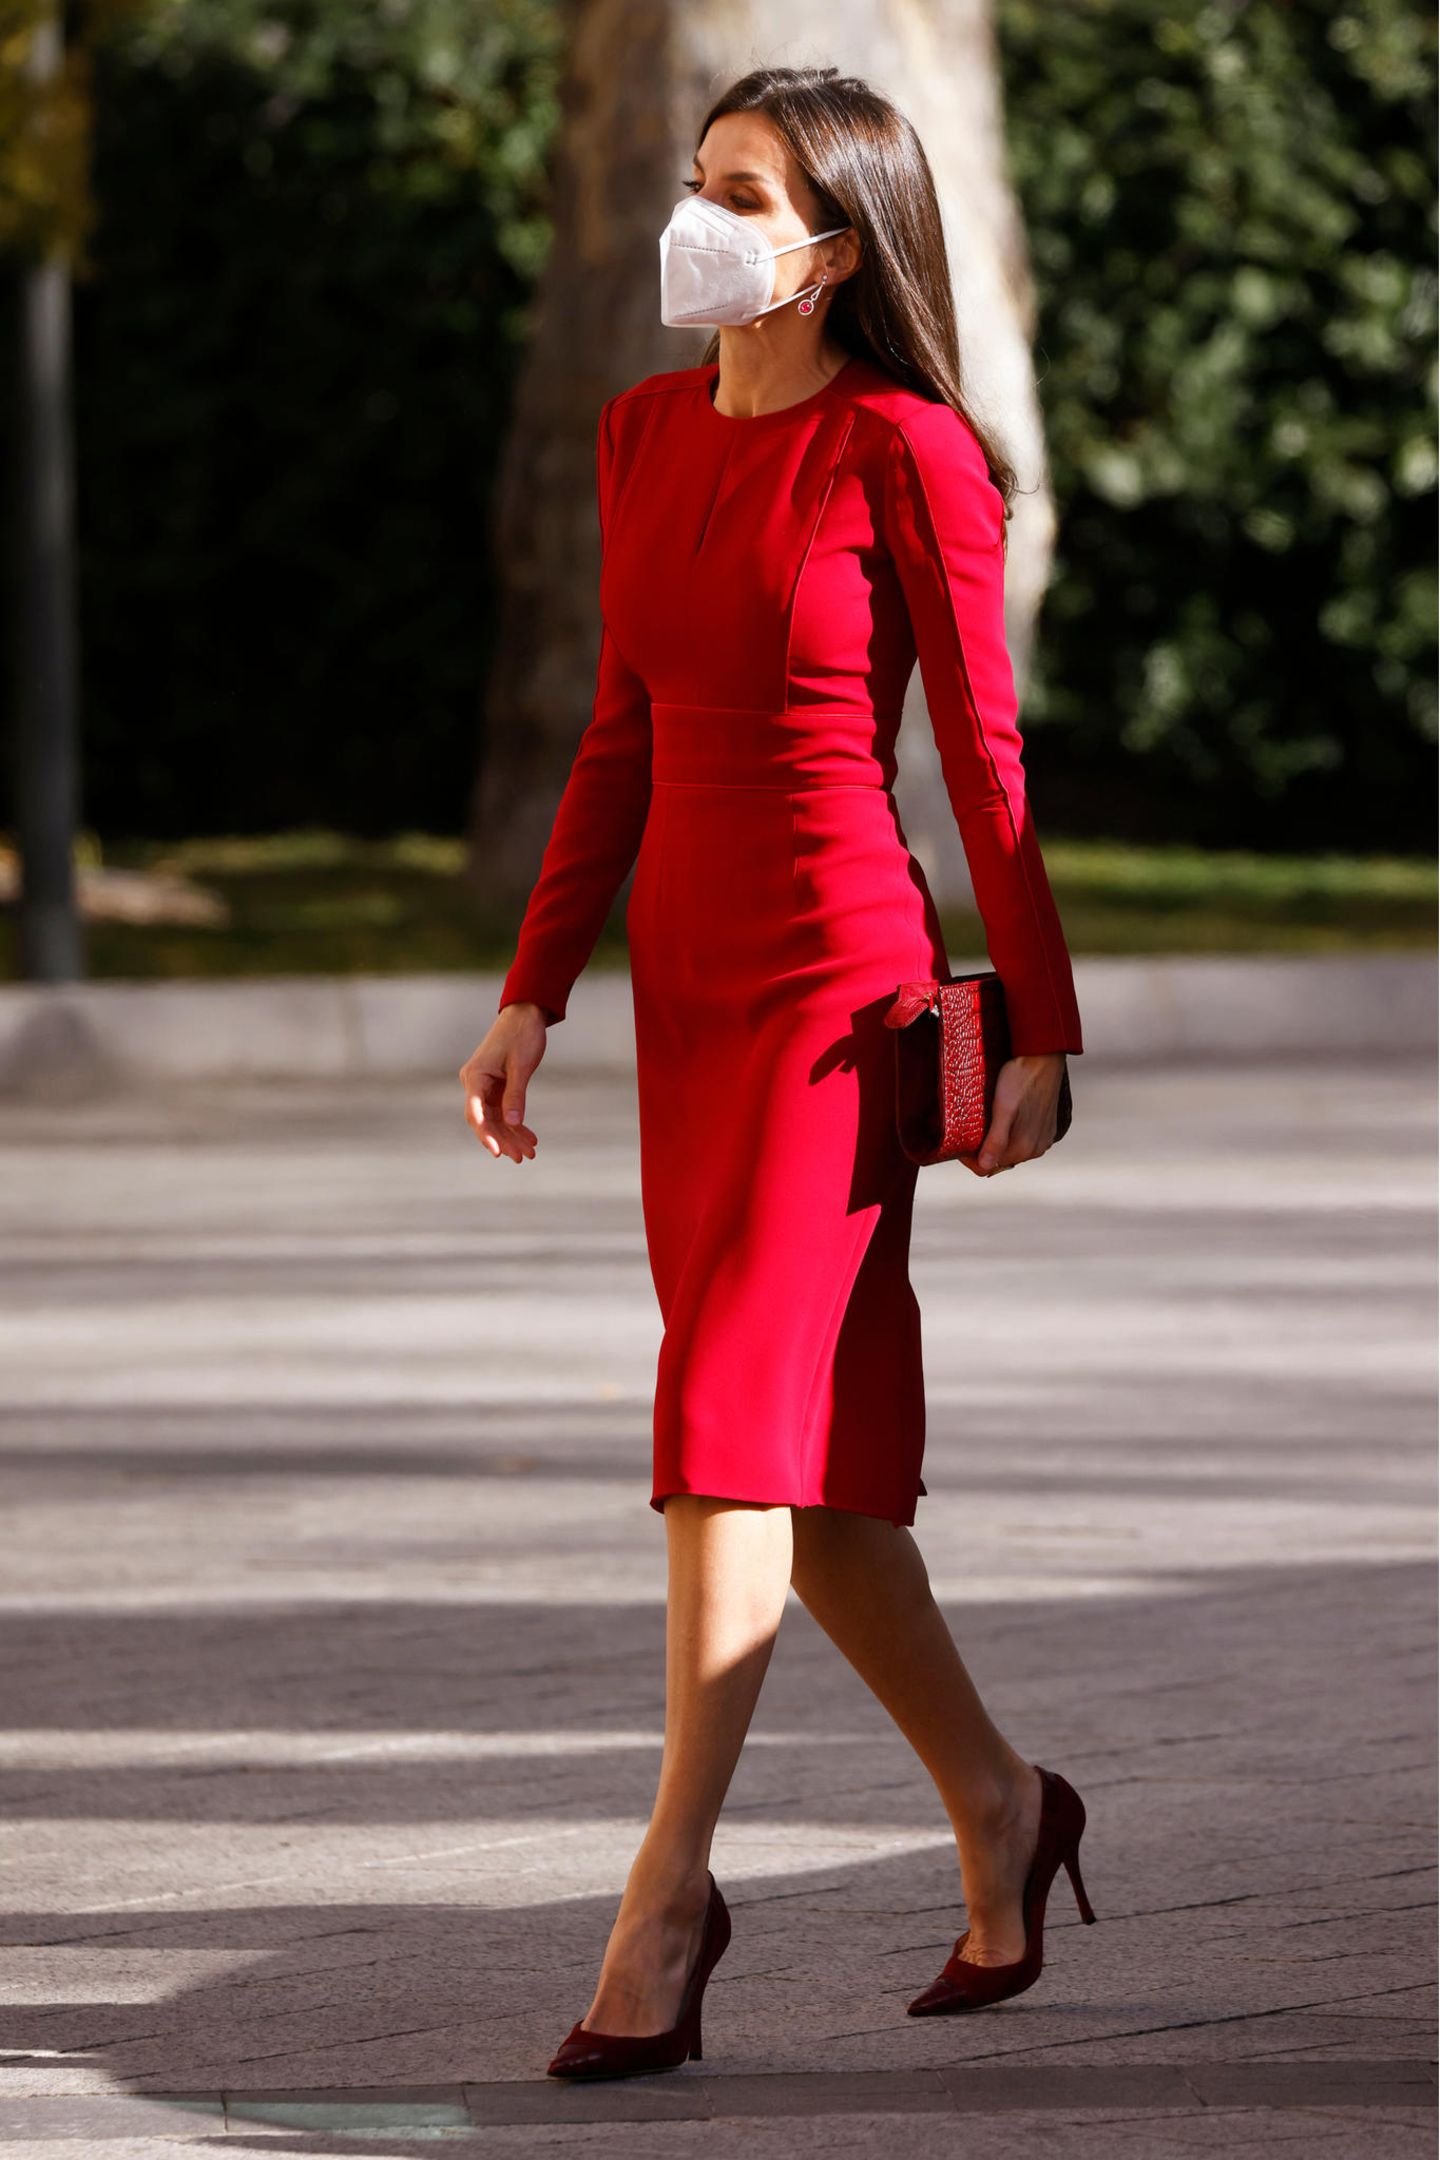 Königin Letizia läuft in einem roten Kleid über die Straße